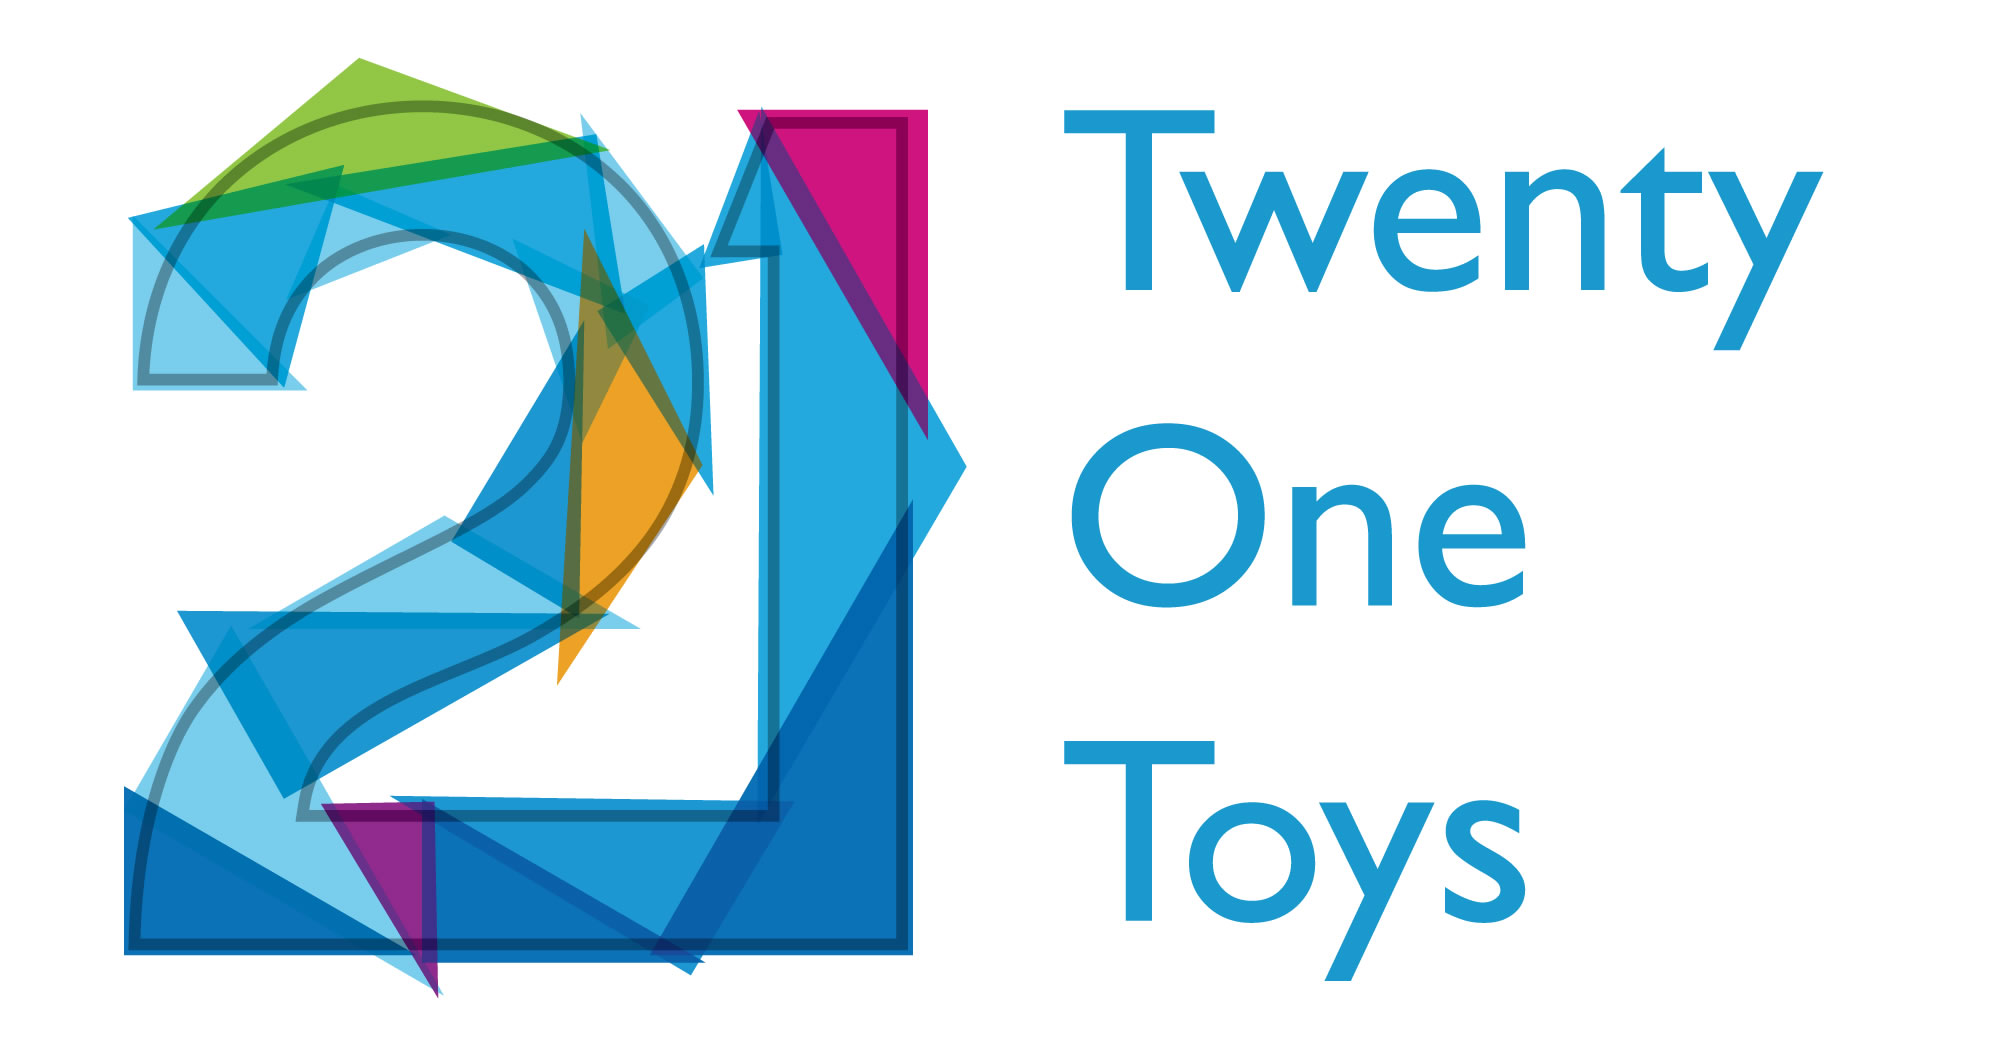 21 toys